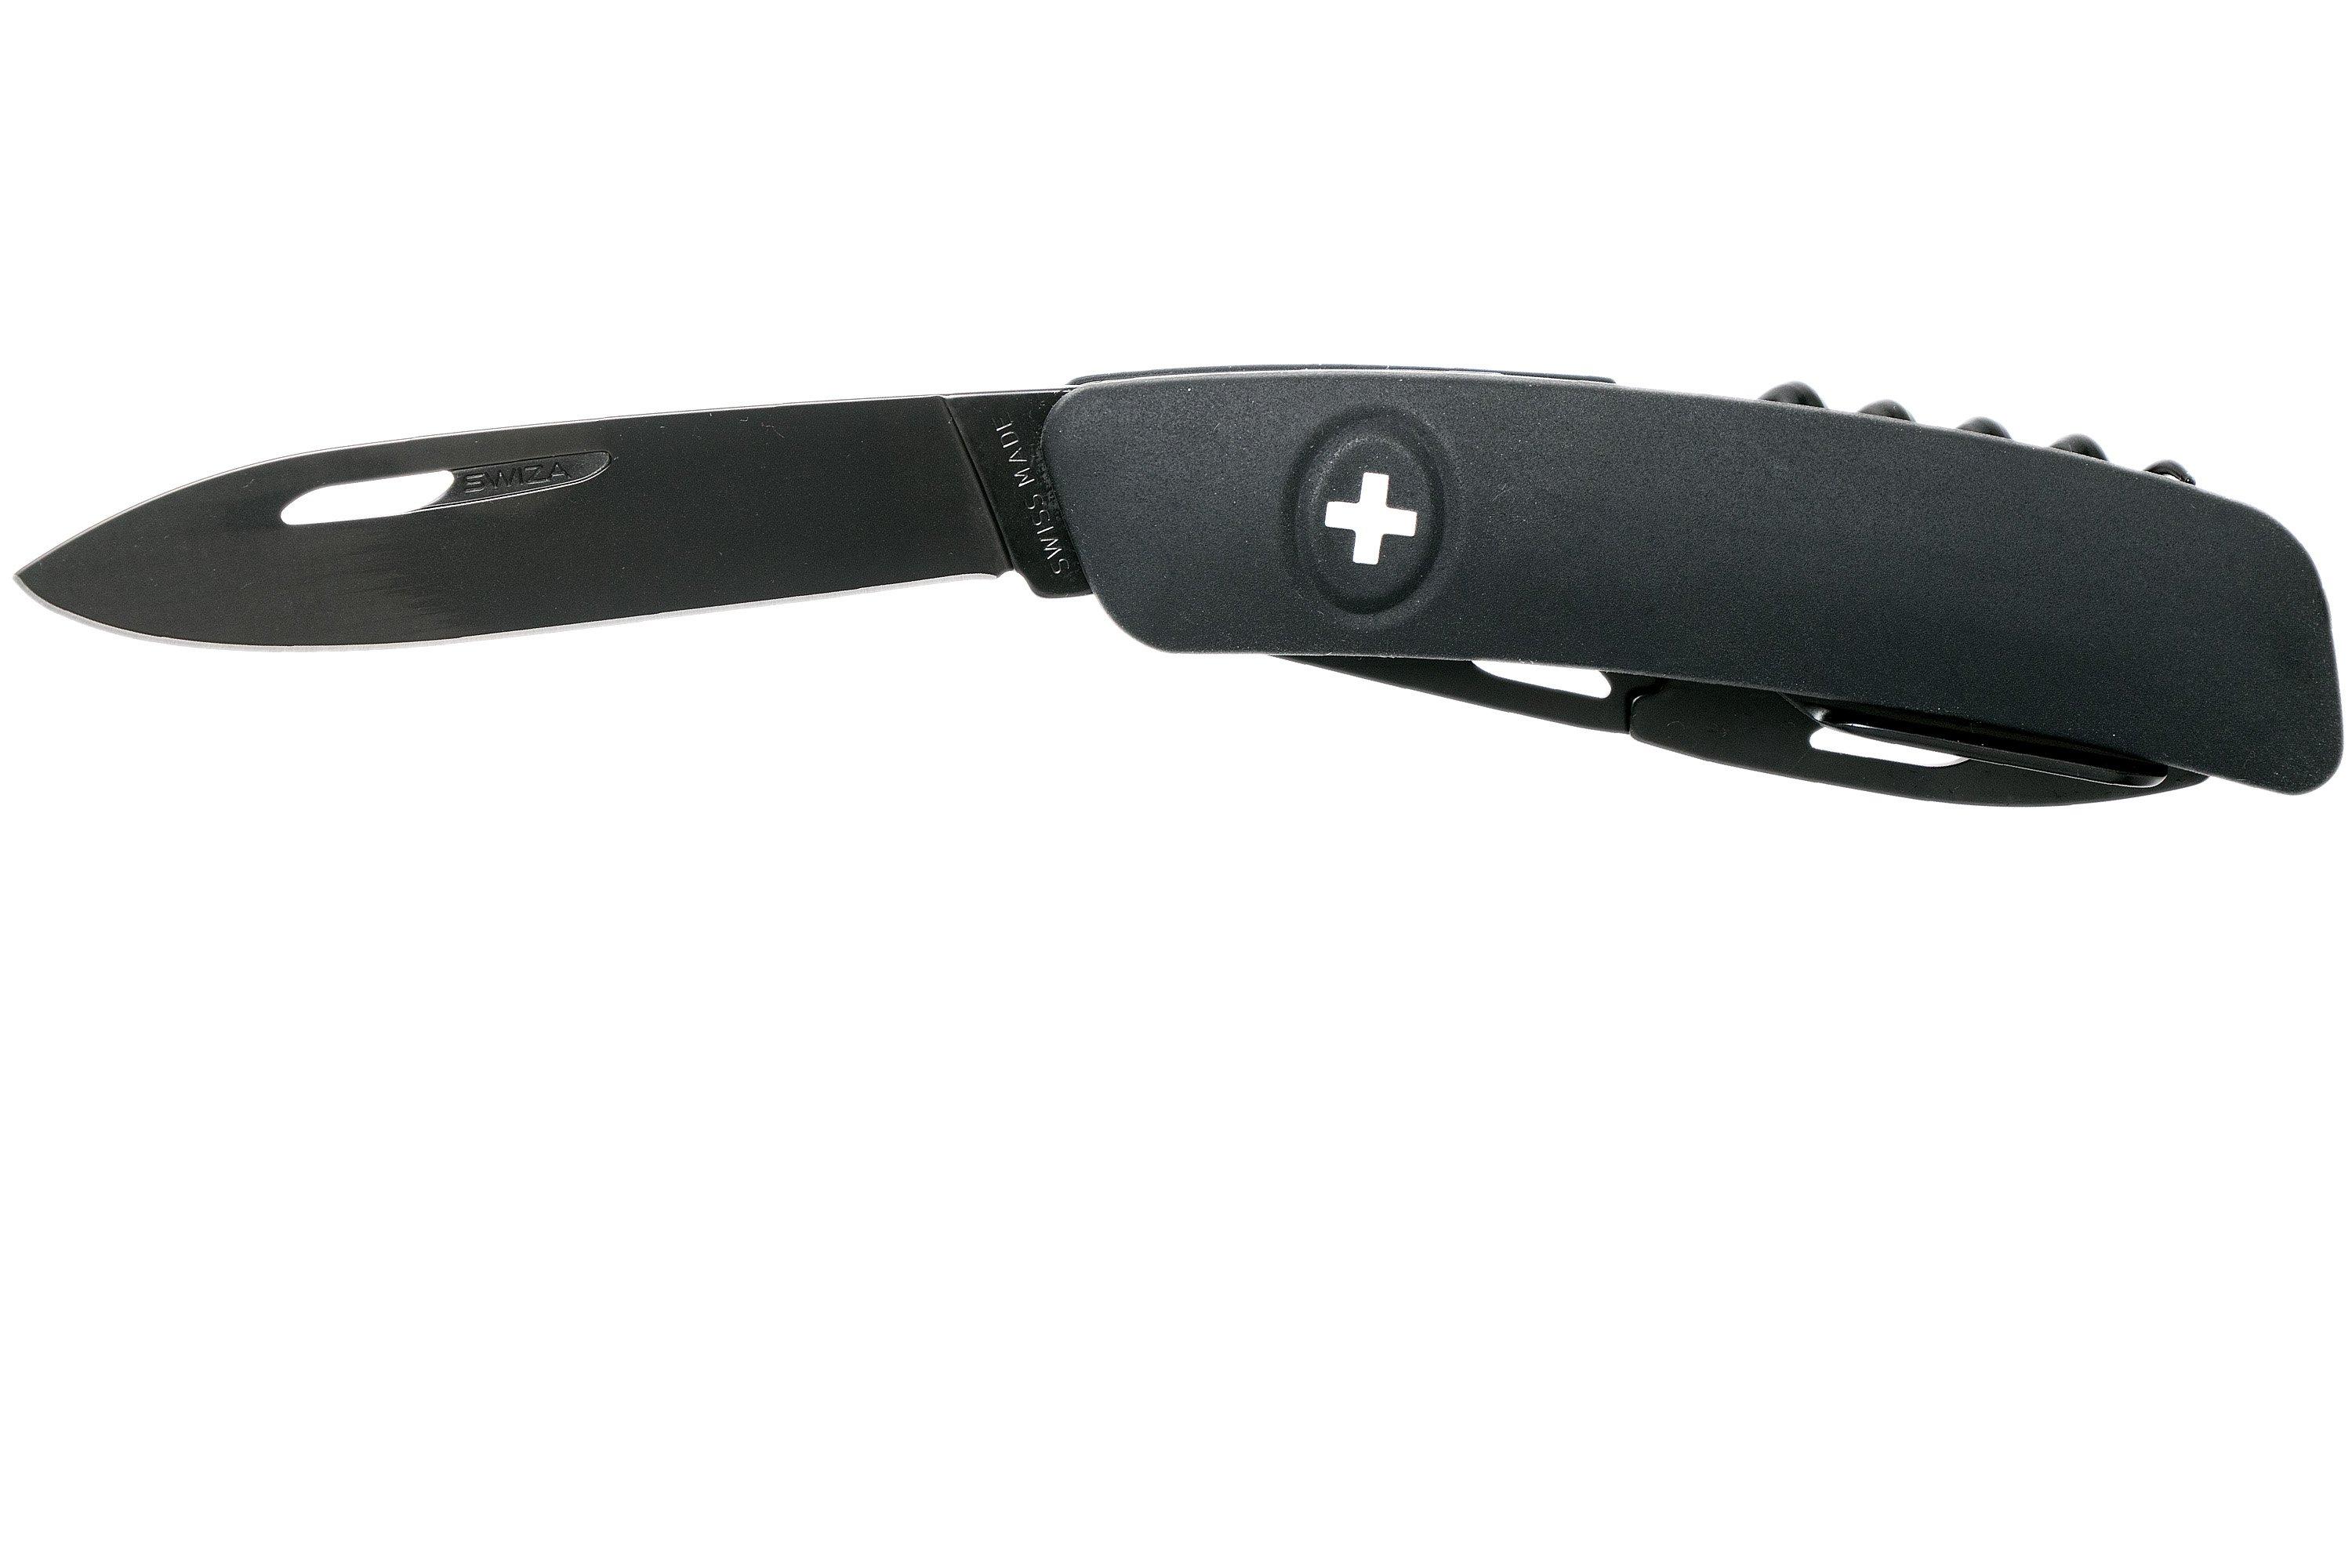  D03 Allblack couteau suisse, noir | Achetez à prix avantageux .